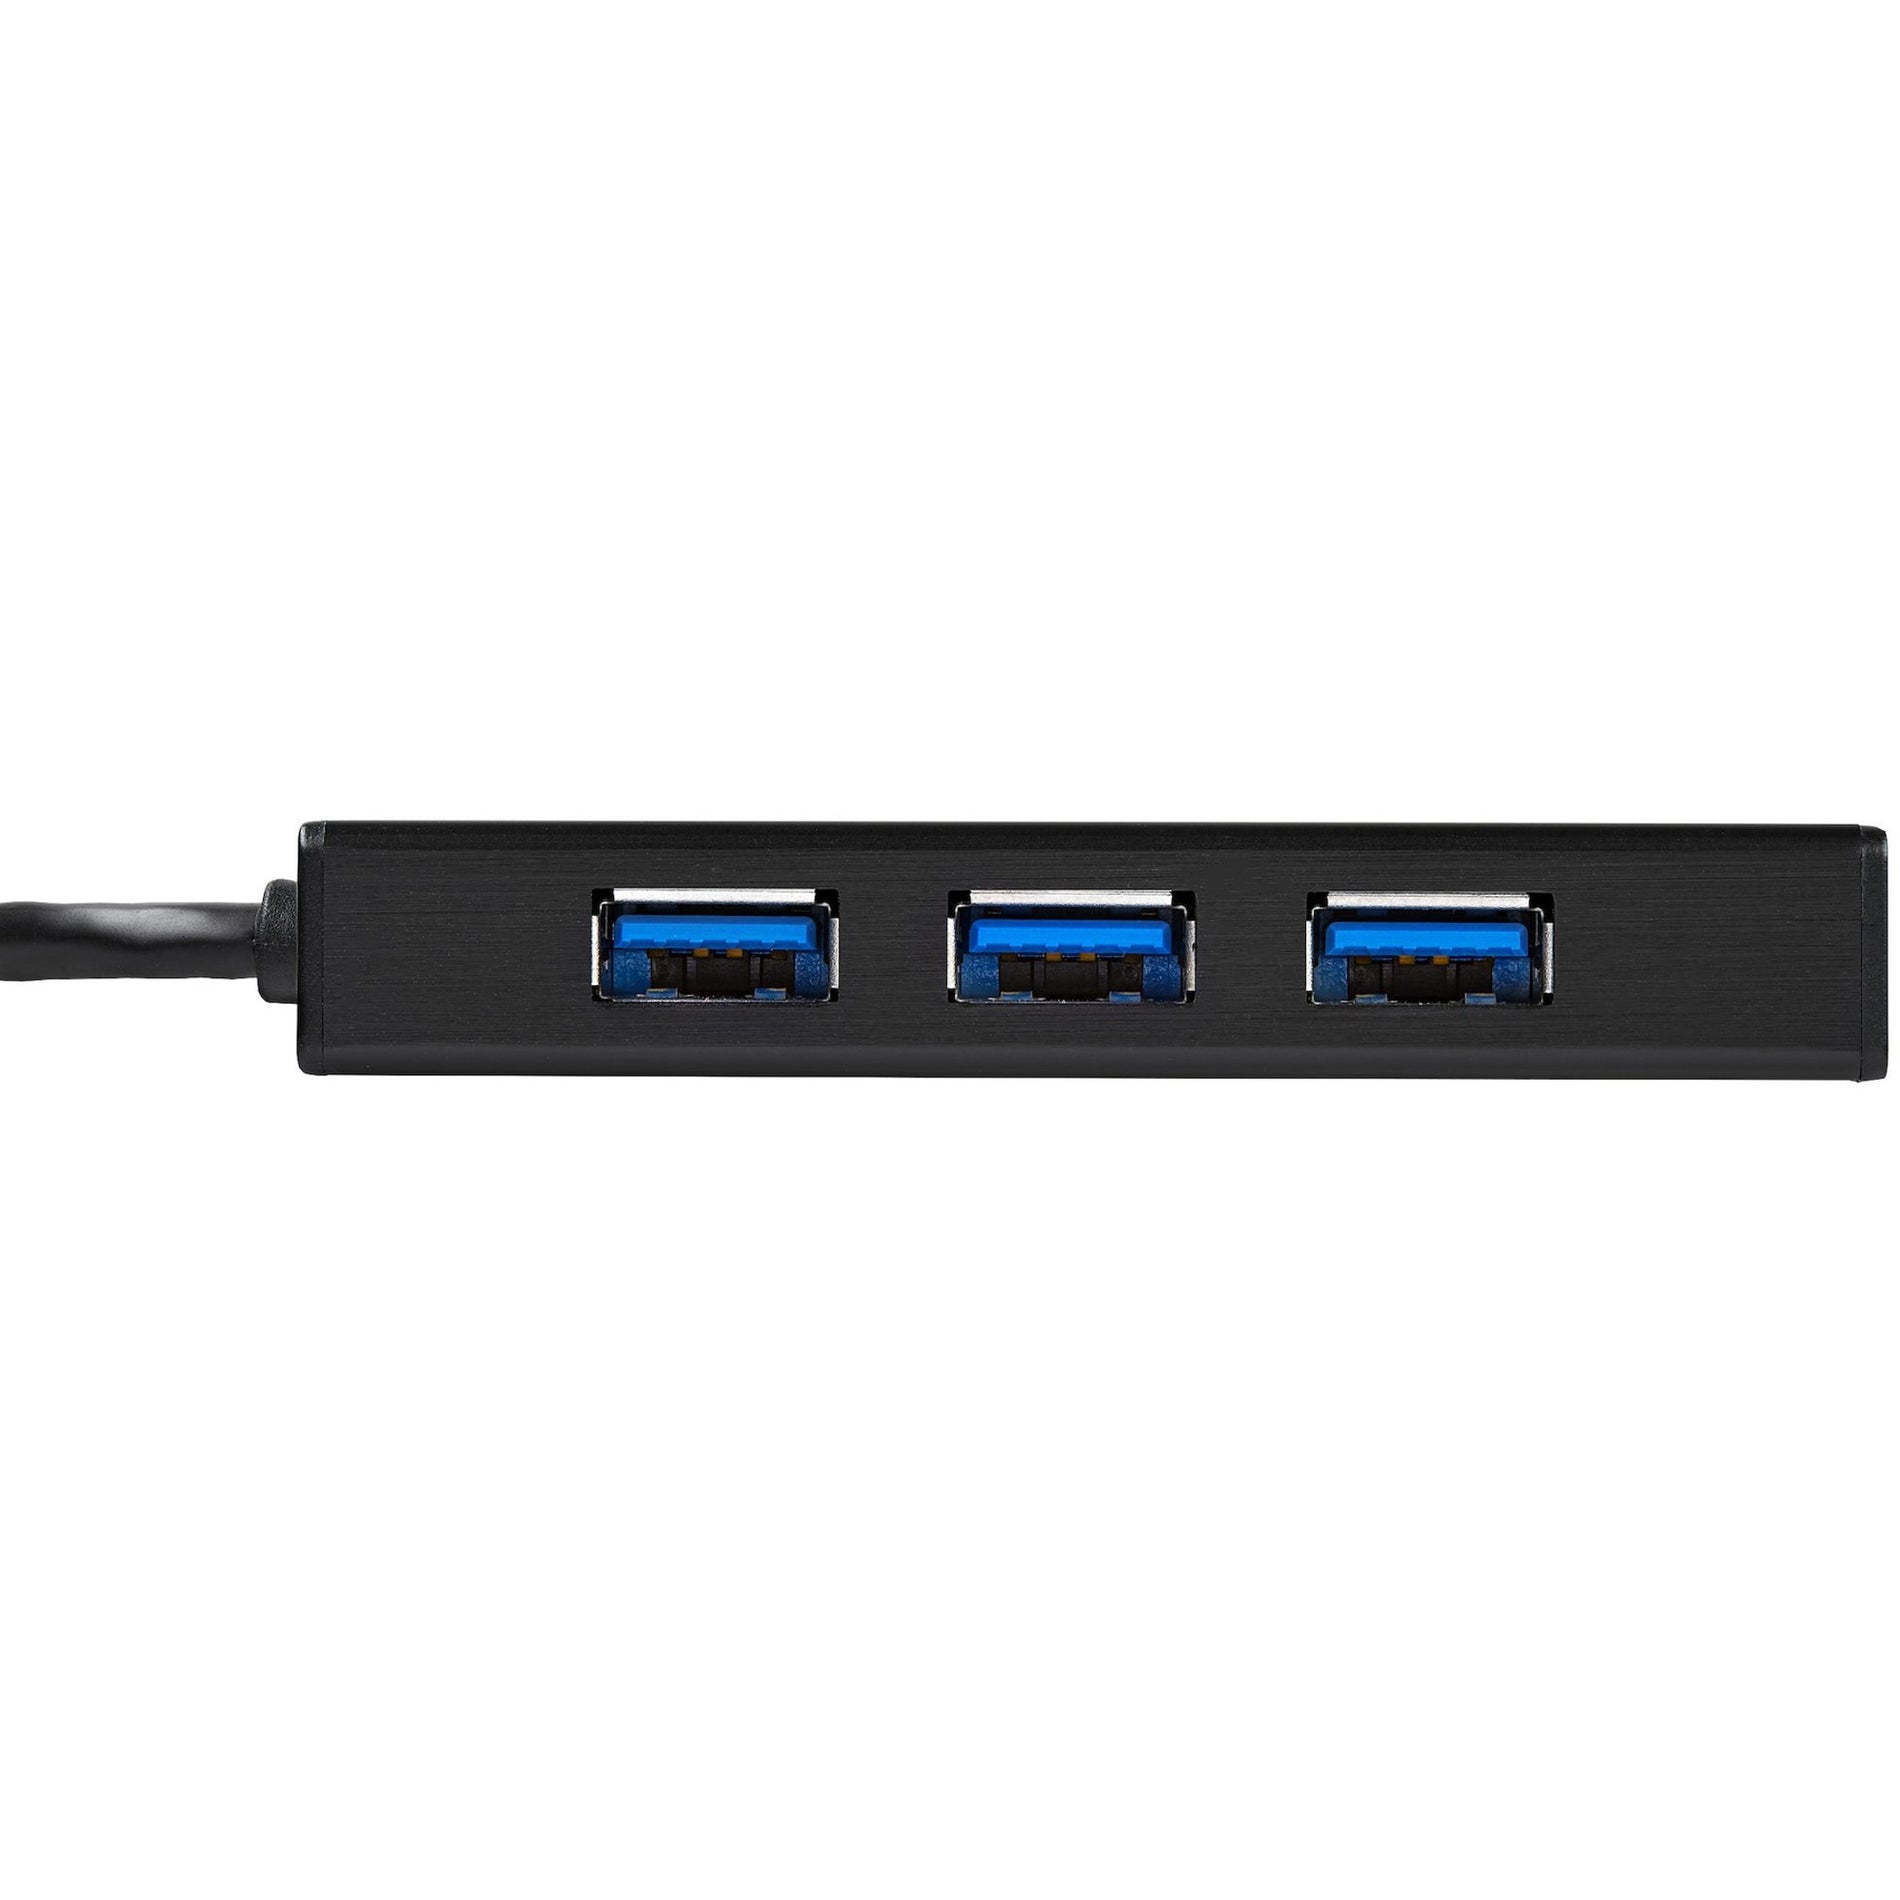 星巴克科技公司 ST3300GU3B 铝 USB 3.0 集线器与千兆以太网适配器 NIC，3 端口便携式，黑色 星巴克科技公司 铝 USB 3.0 集线器与千兆以太网适配器 NIC，3 端口便携式，黑色